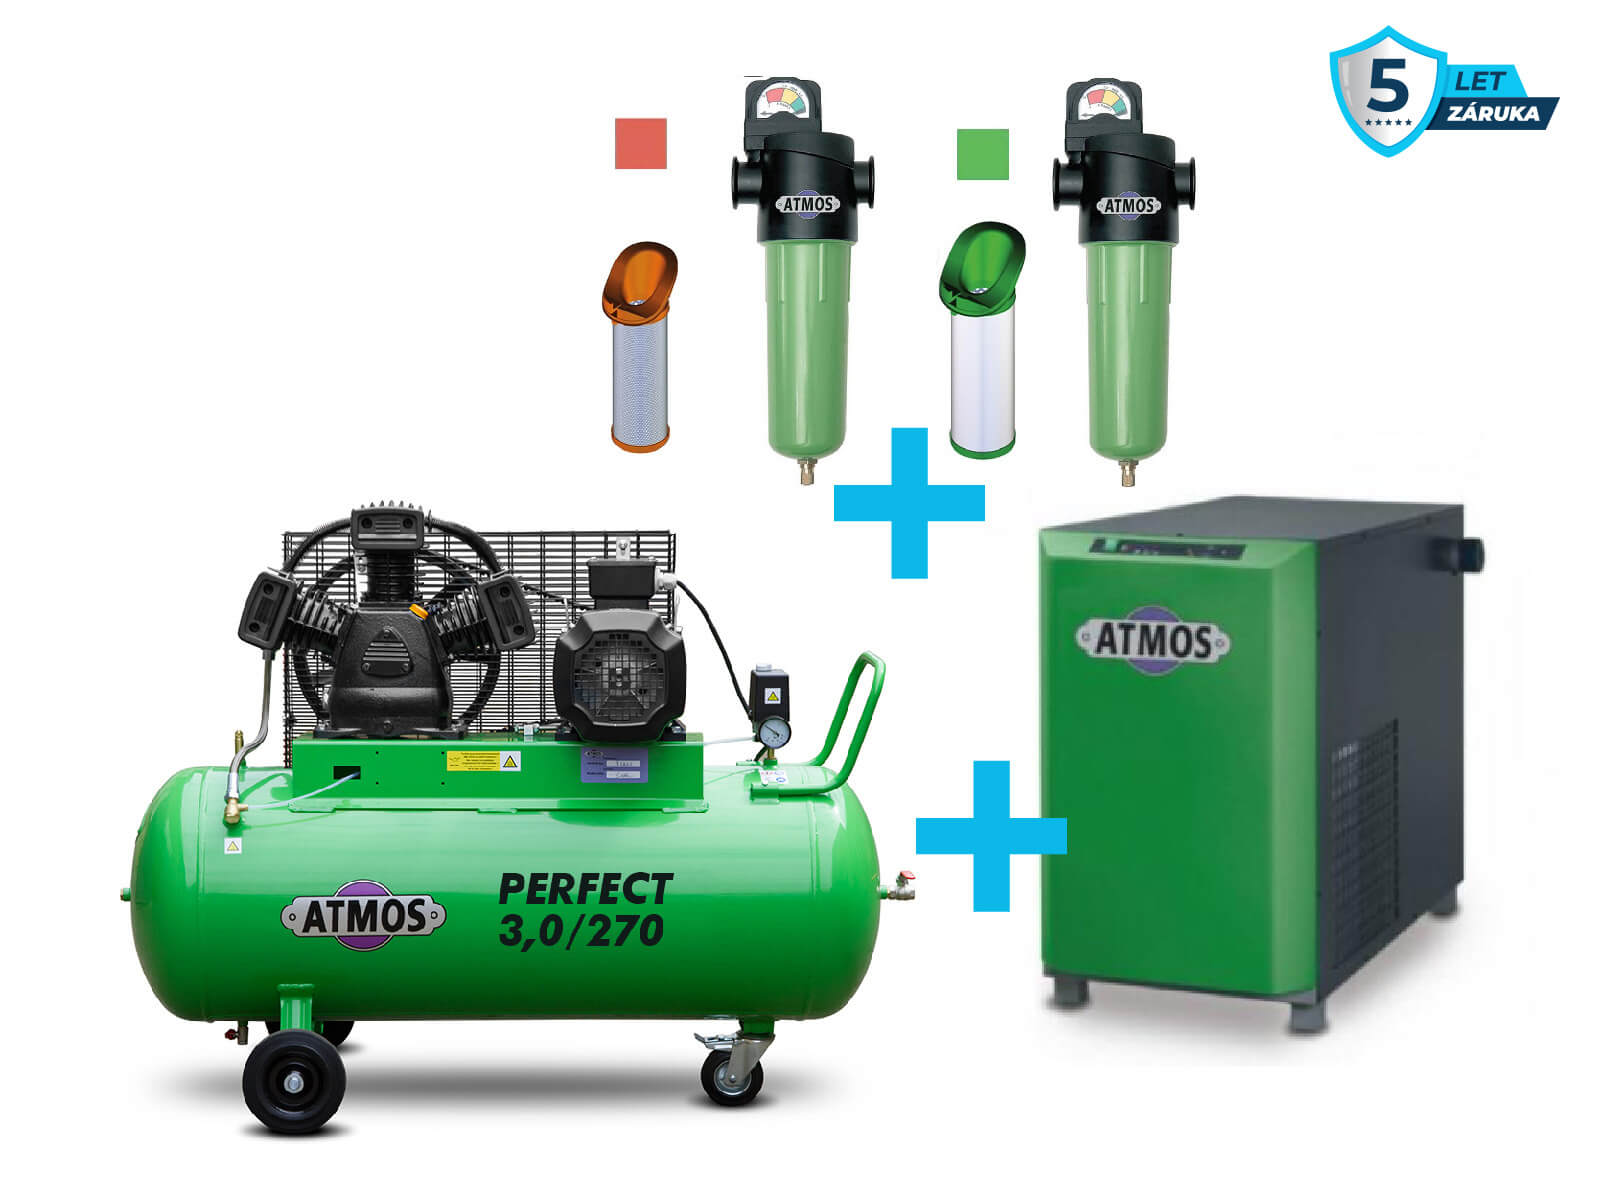 Atmos Sestava kompresor + sušička + filtrace - SAP3/270 příkon 3,0 kW, výkon 408 l/min, 10 bar, vzdušník 270 l, sušička, filtrace